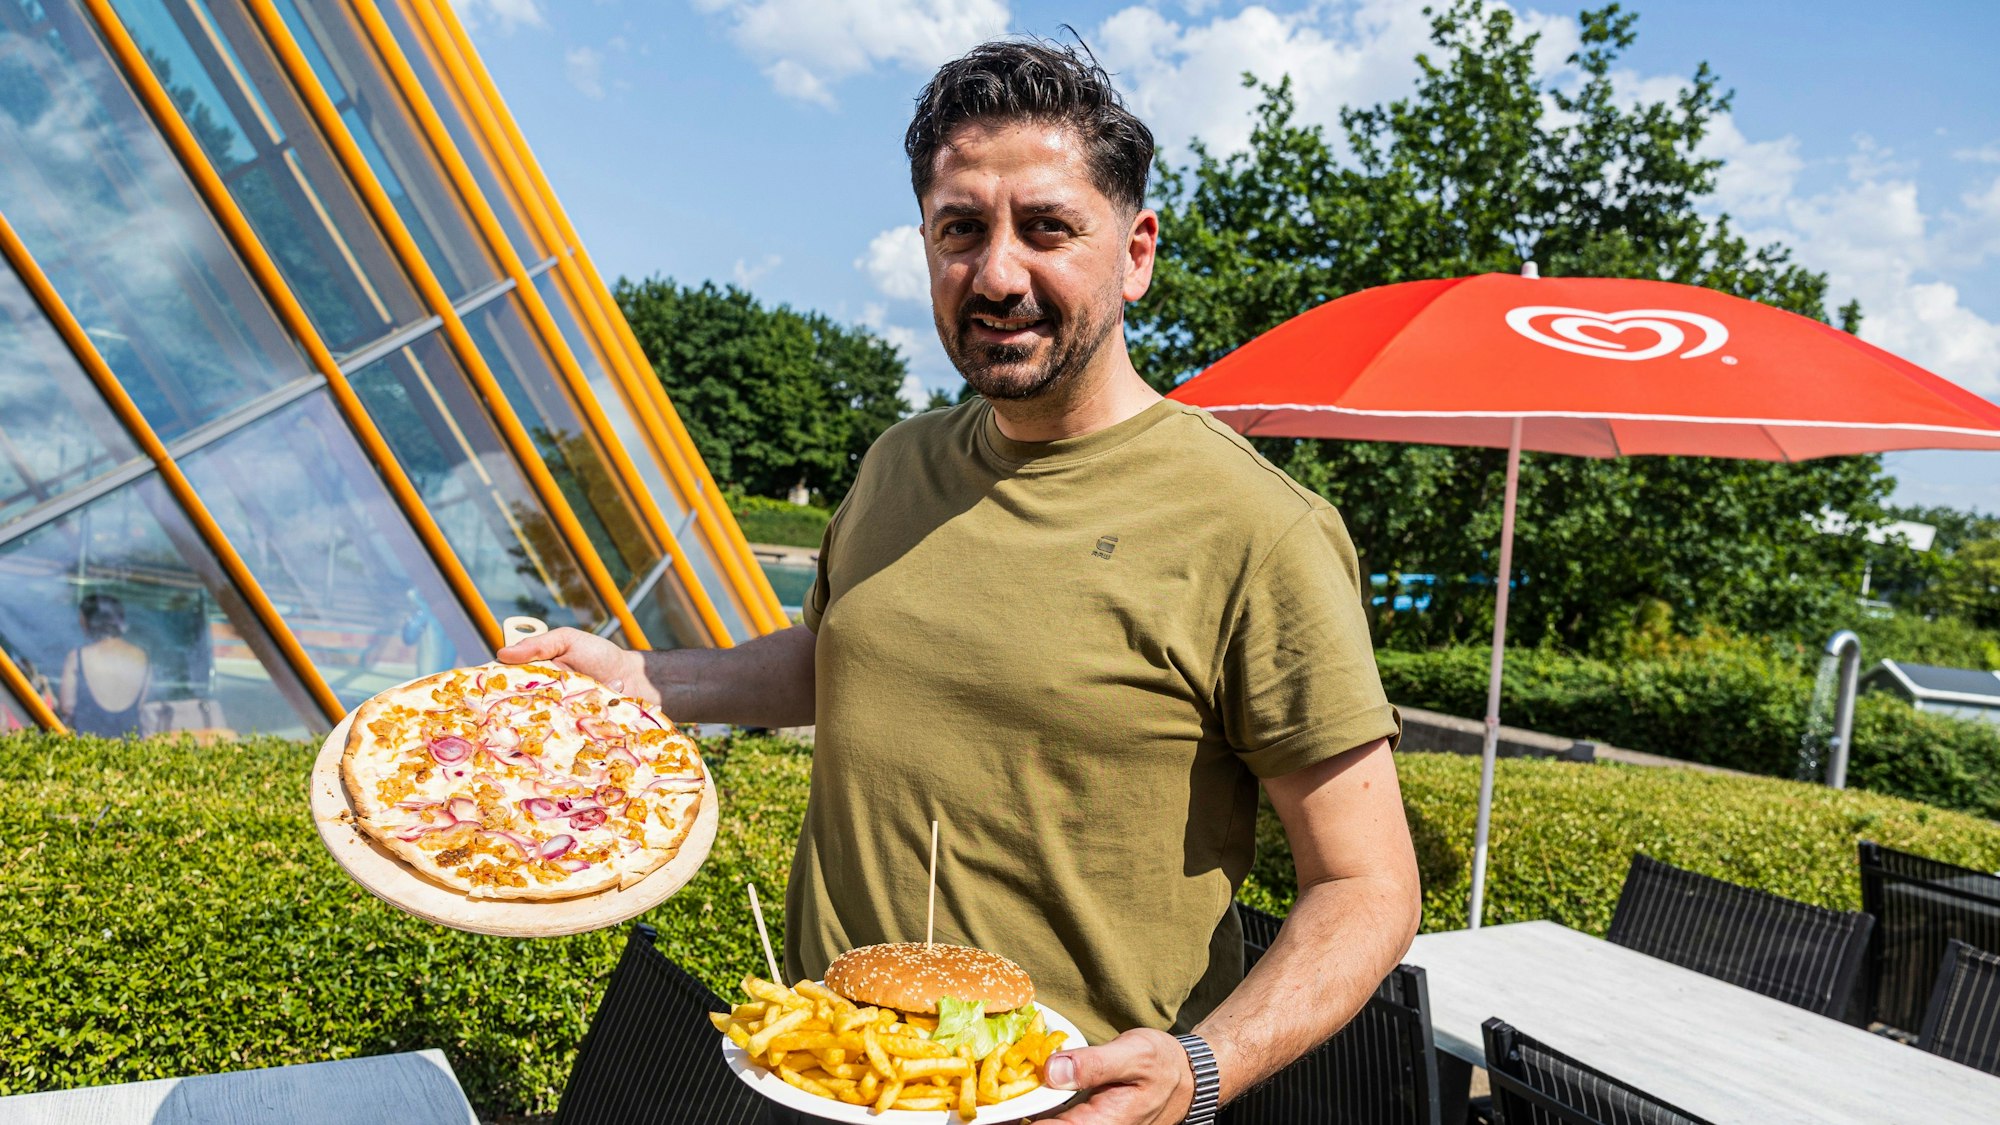 Murad Mirzoev bietet im Bornheimer Allwetterbad Burger, Pommes und ungewöhnlichen Flammkuchen